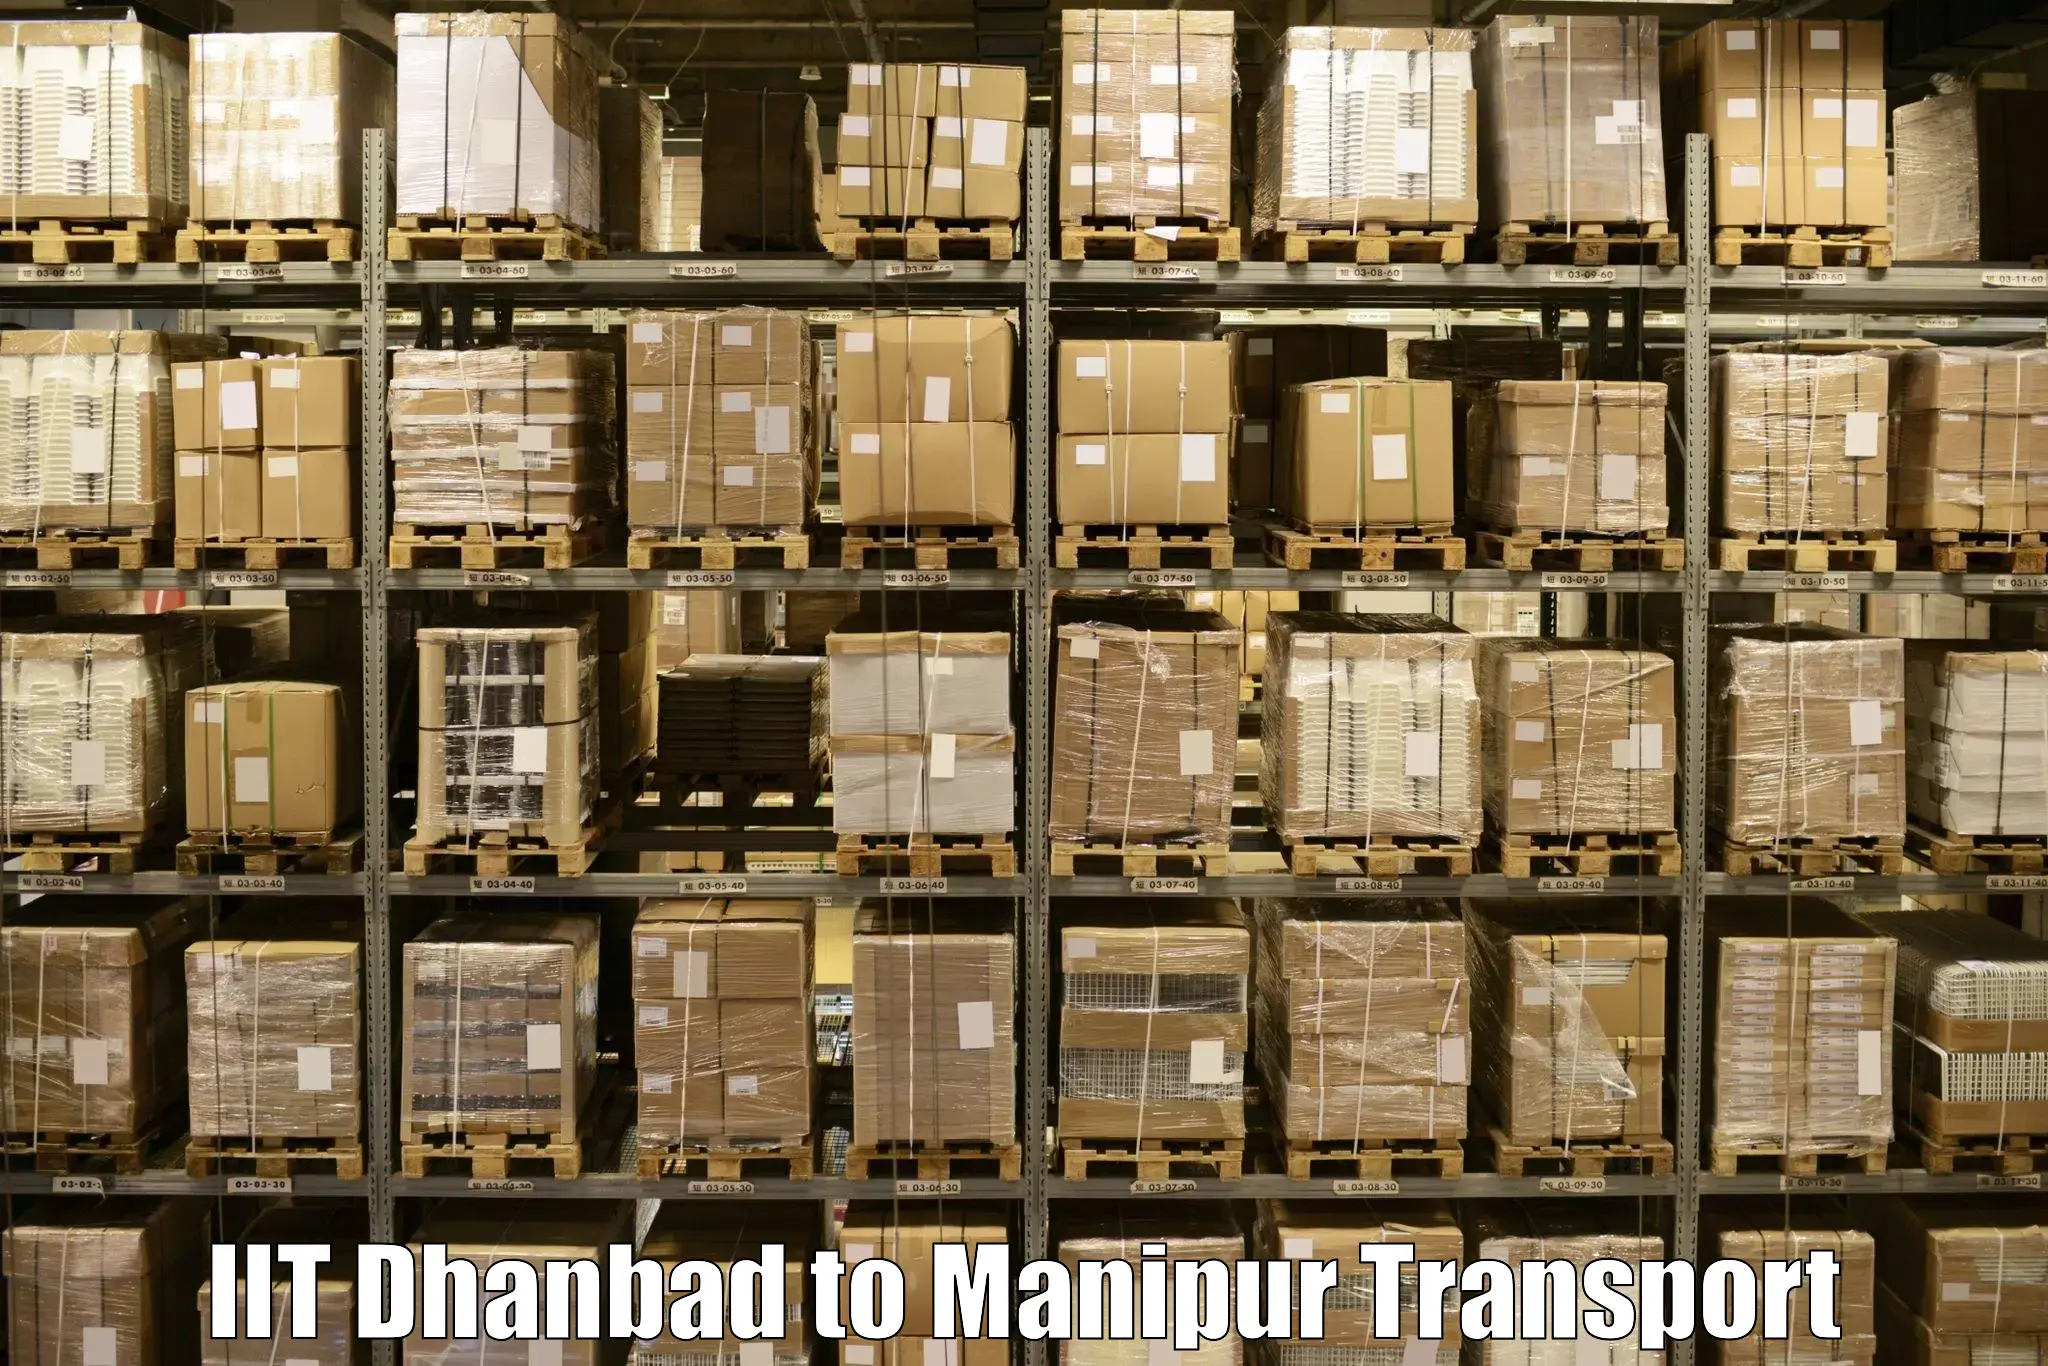 Goods transport services in IIT Dhanbad to Churachandpur